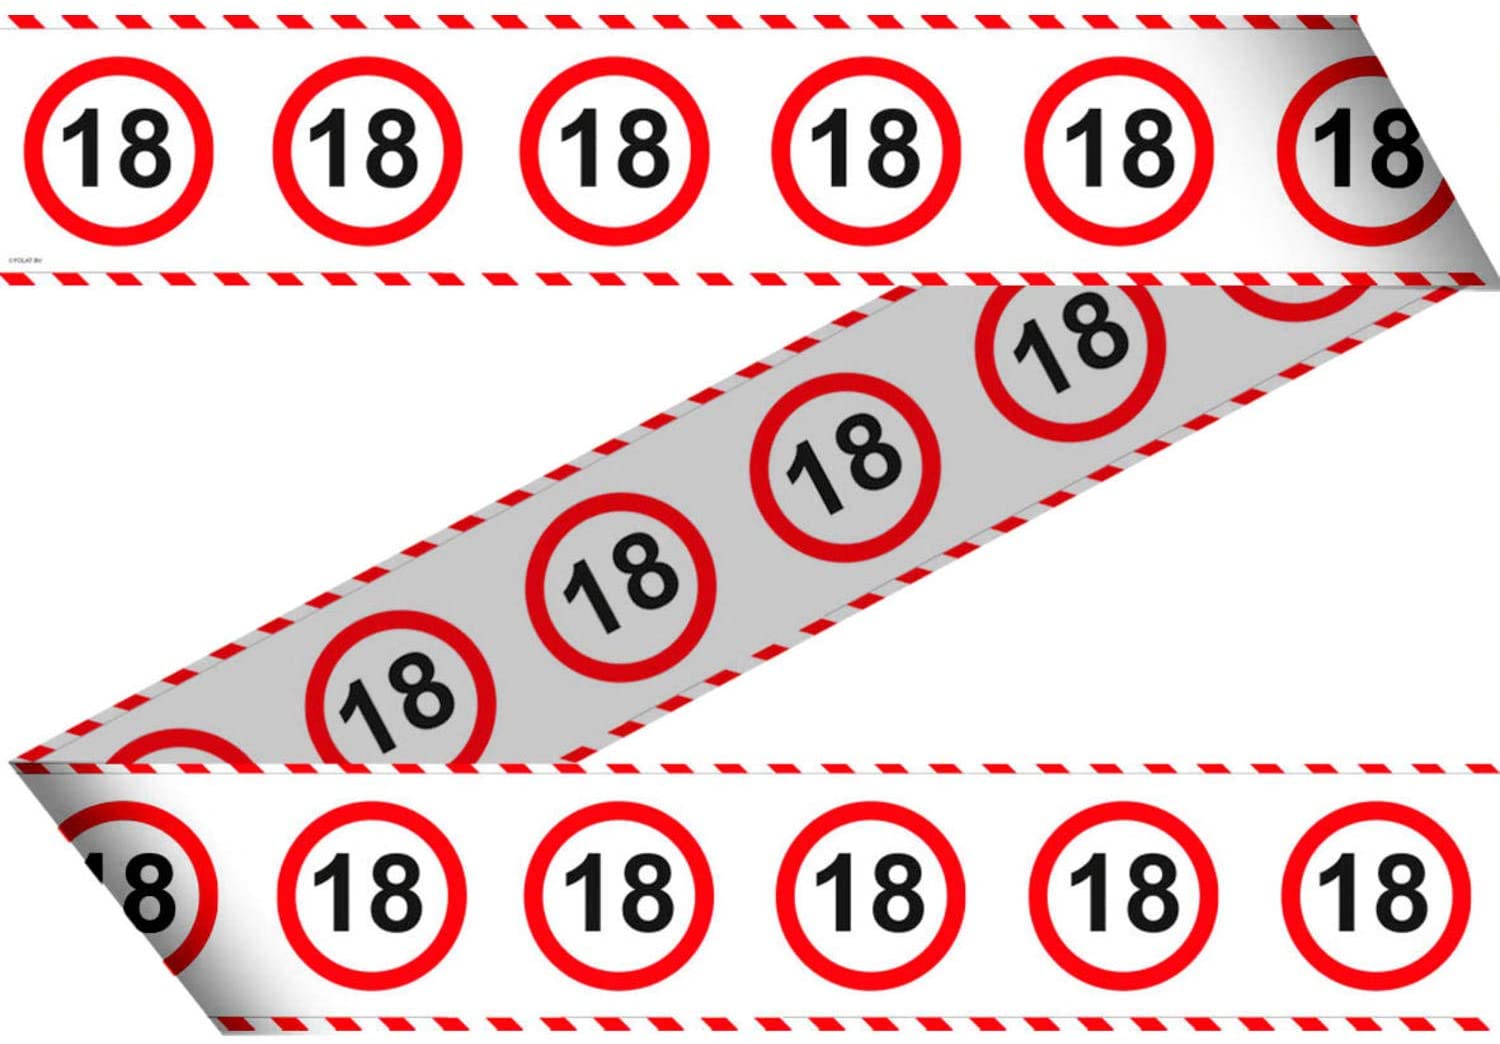 Absperrband 18 - 15m lang - DEKO zum 18. Geburtstag - Kunststoff-Absperrband Bedruckt mit Verkehrsschild Zahl 18